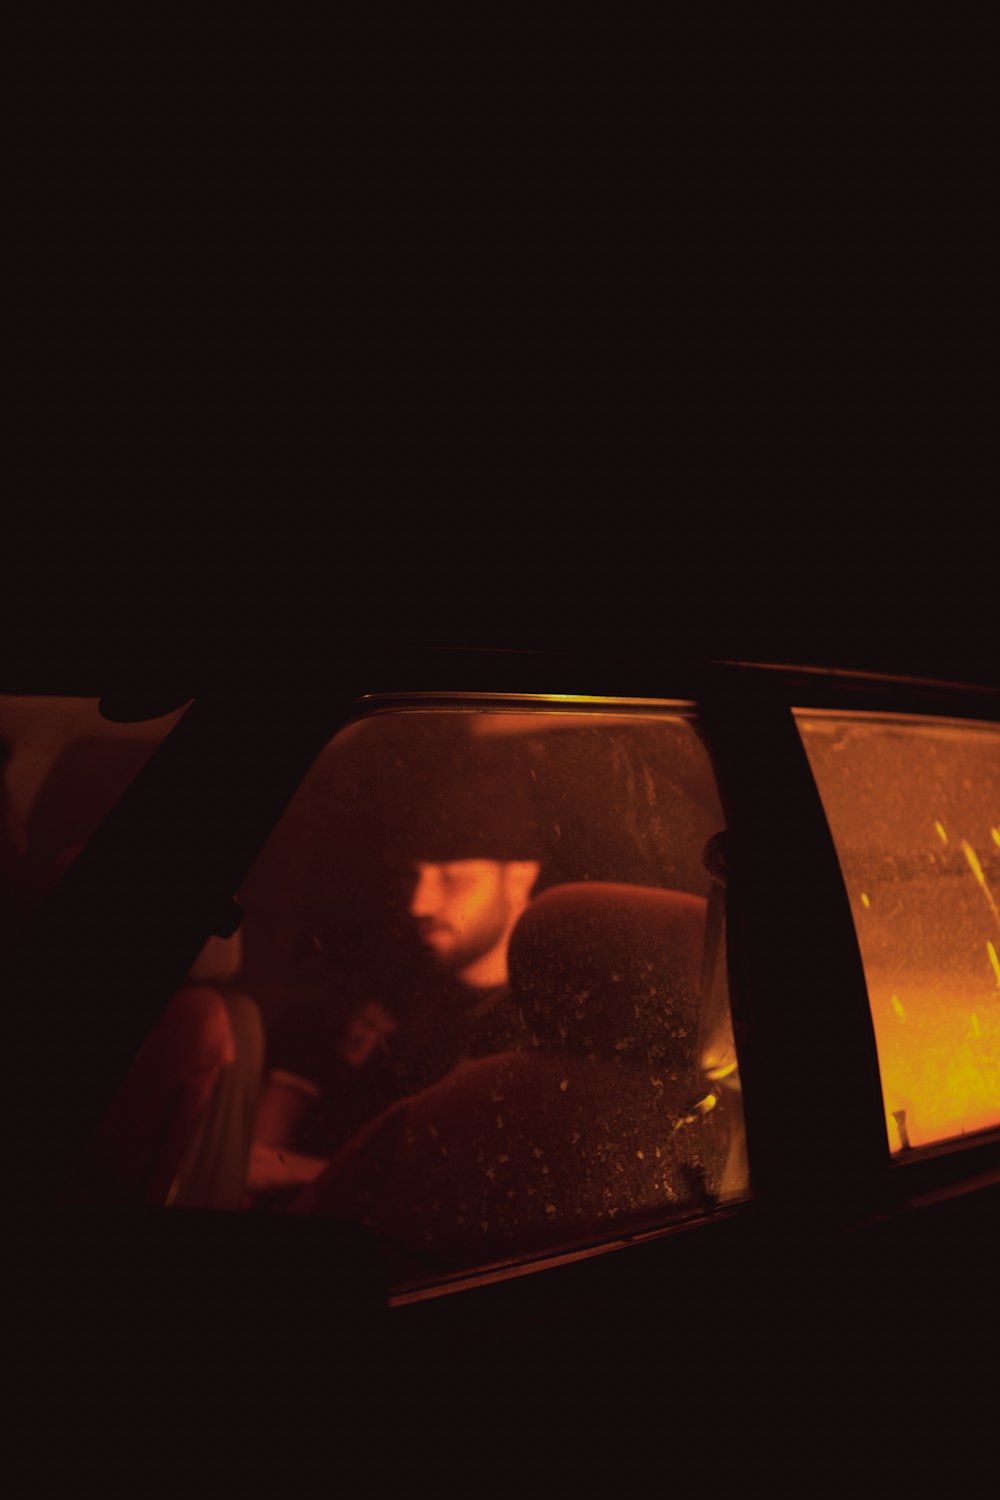 a man driving a car in the dark